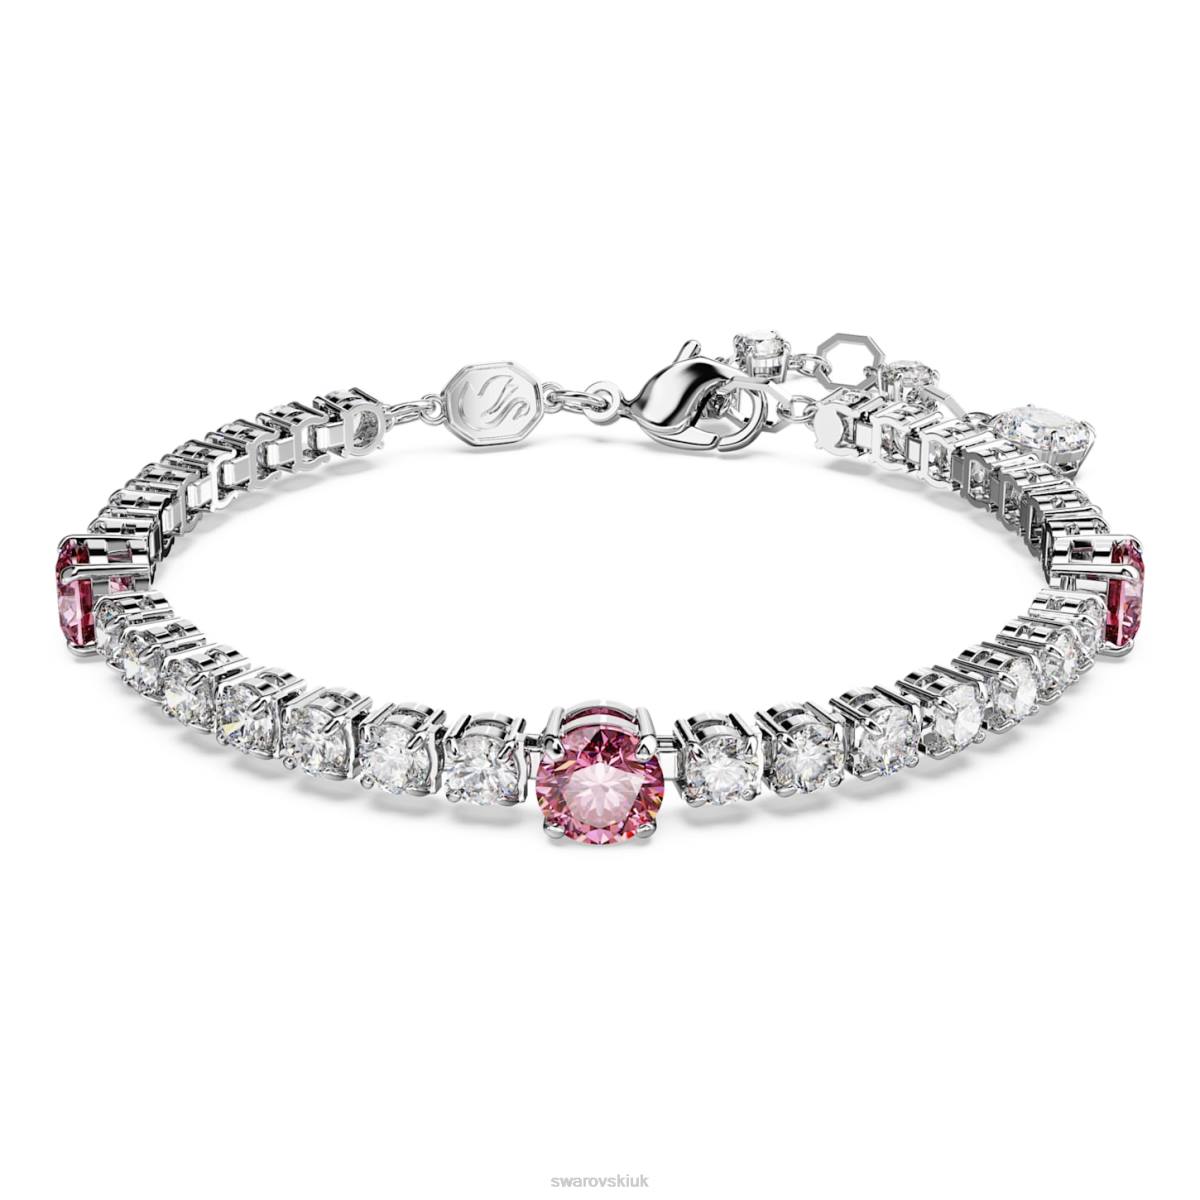 Jewelry Swarovski Matrix Tennis bracelet Mixed cuts, Pink, Rhodium plated 48JX578